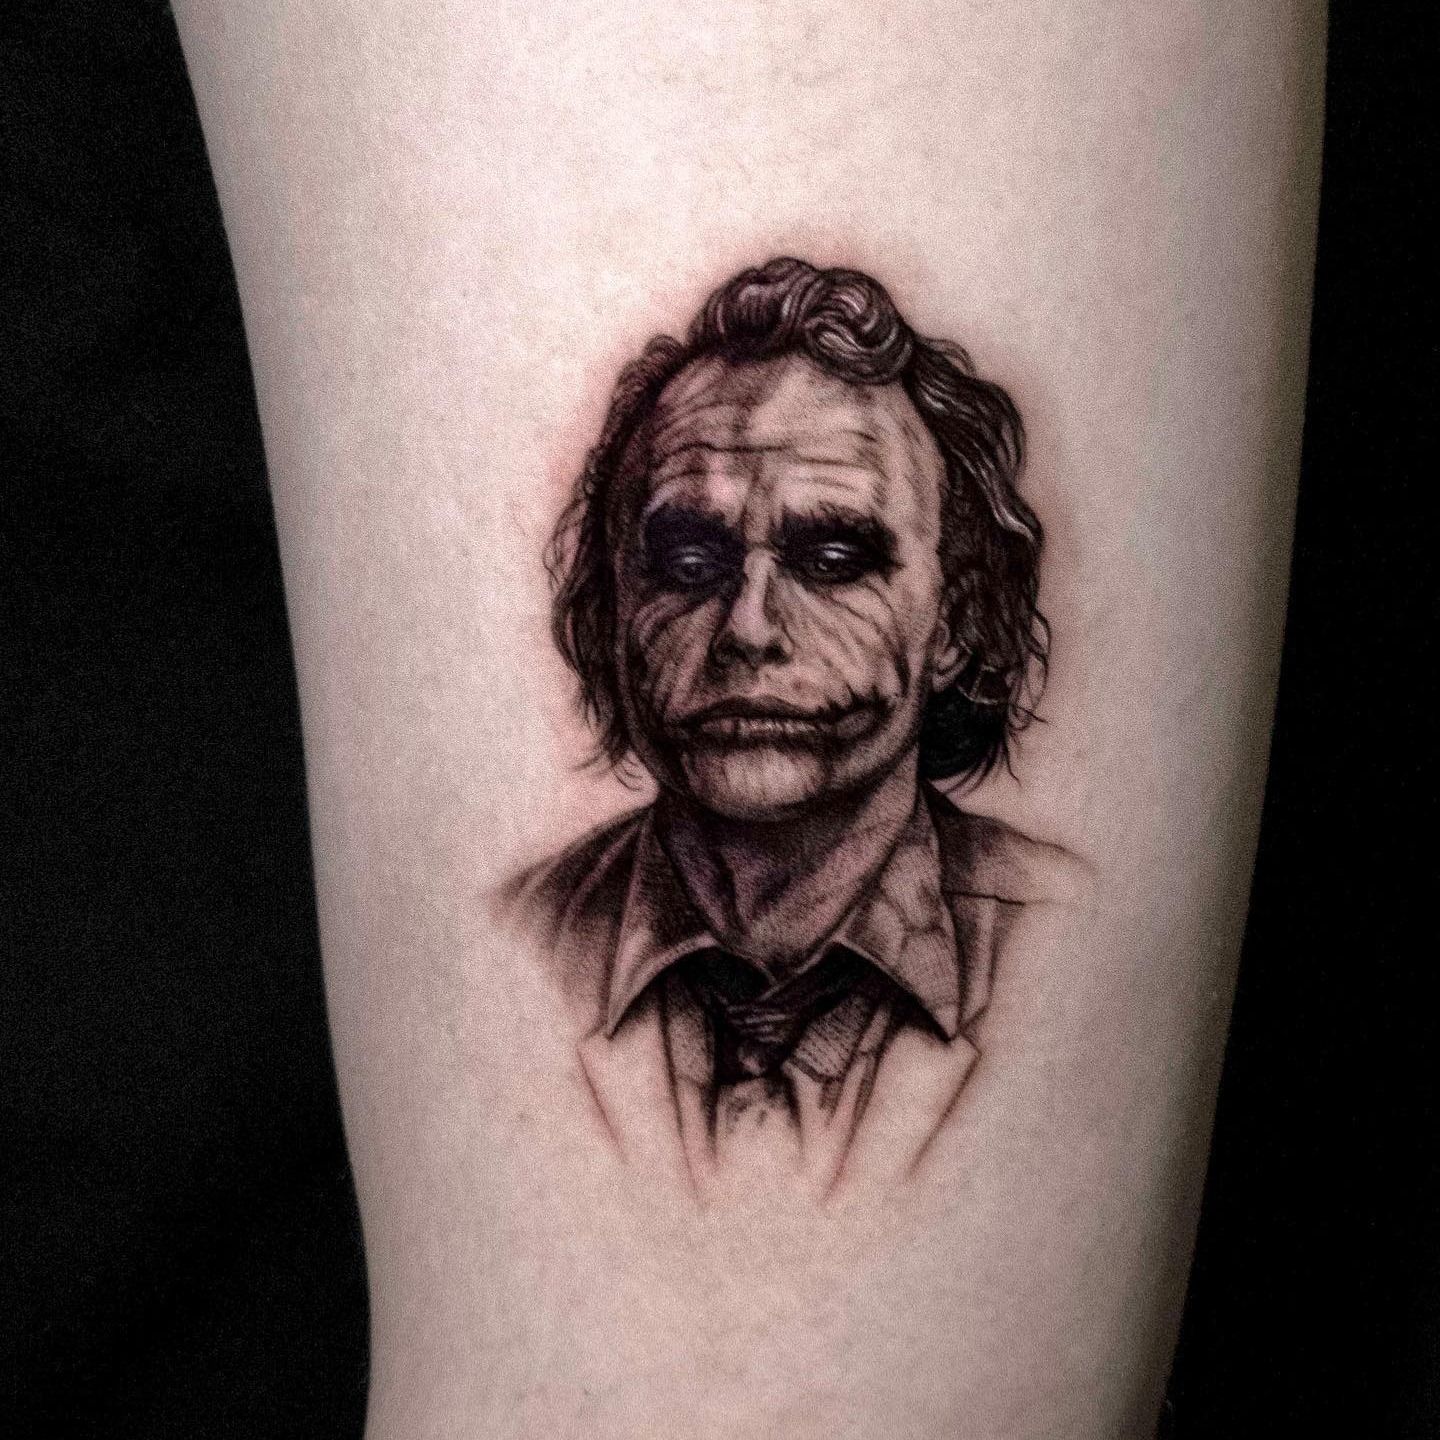 jokertattoo #joker face tattoo Yelahanka Bangalore | Joker tattoo, Face  tattoo, Tattoos